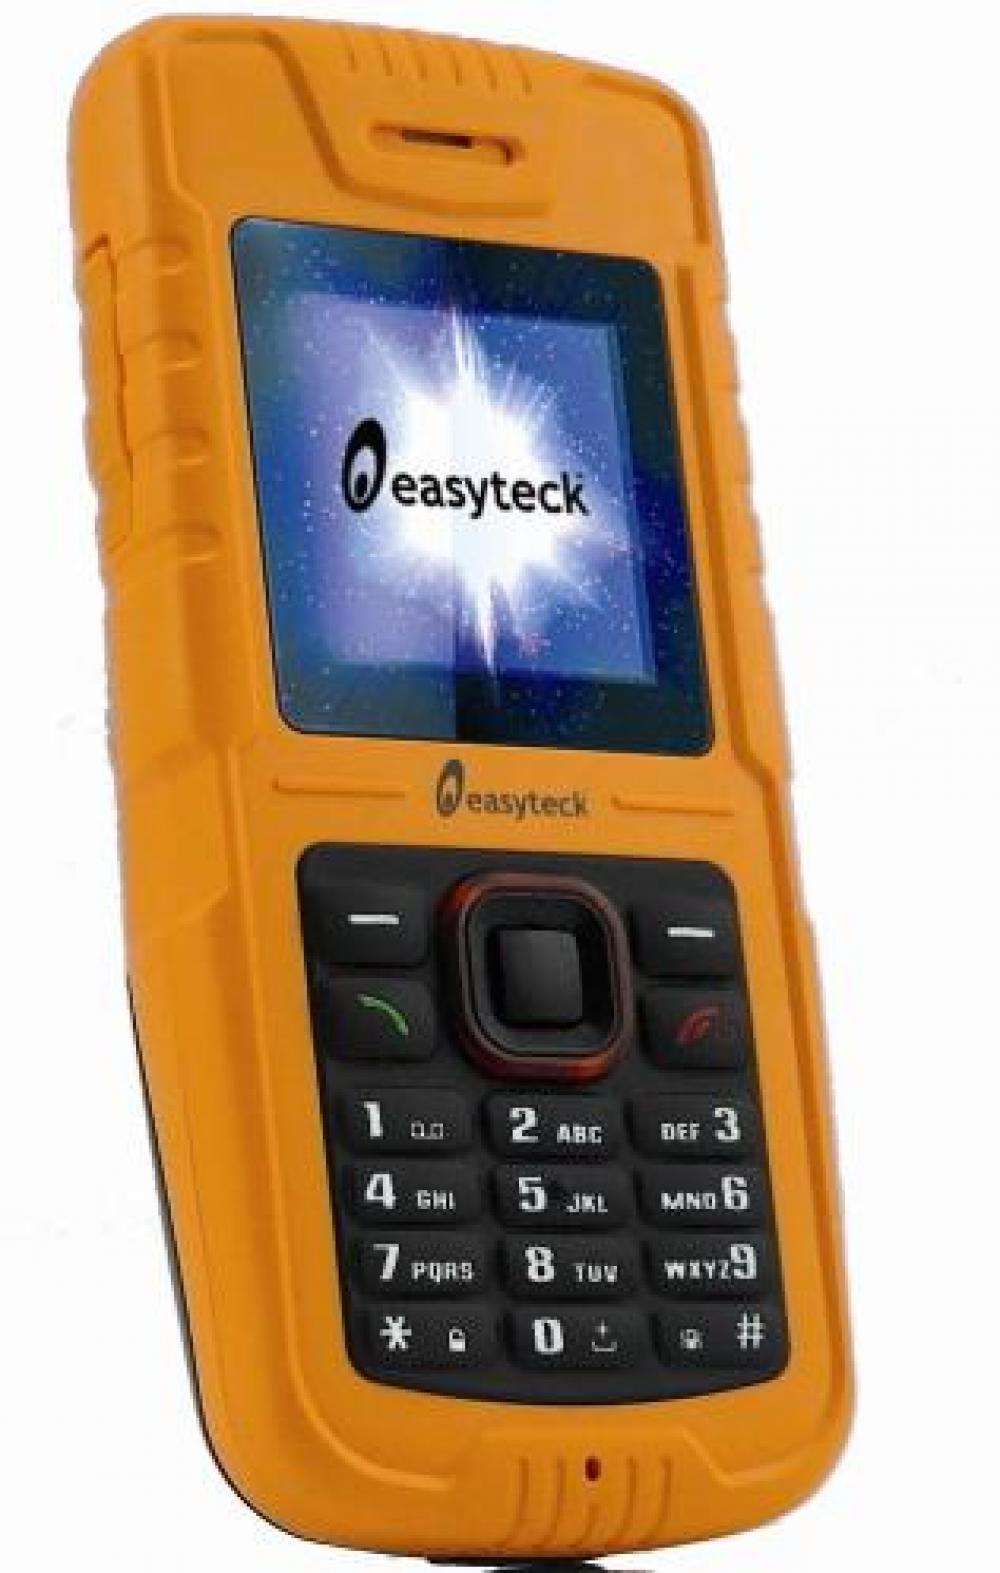 Easyteck W301X, il telefono indistruttibile che galleggia - Vela e Motore